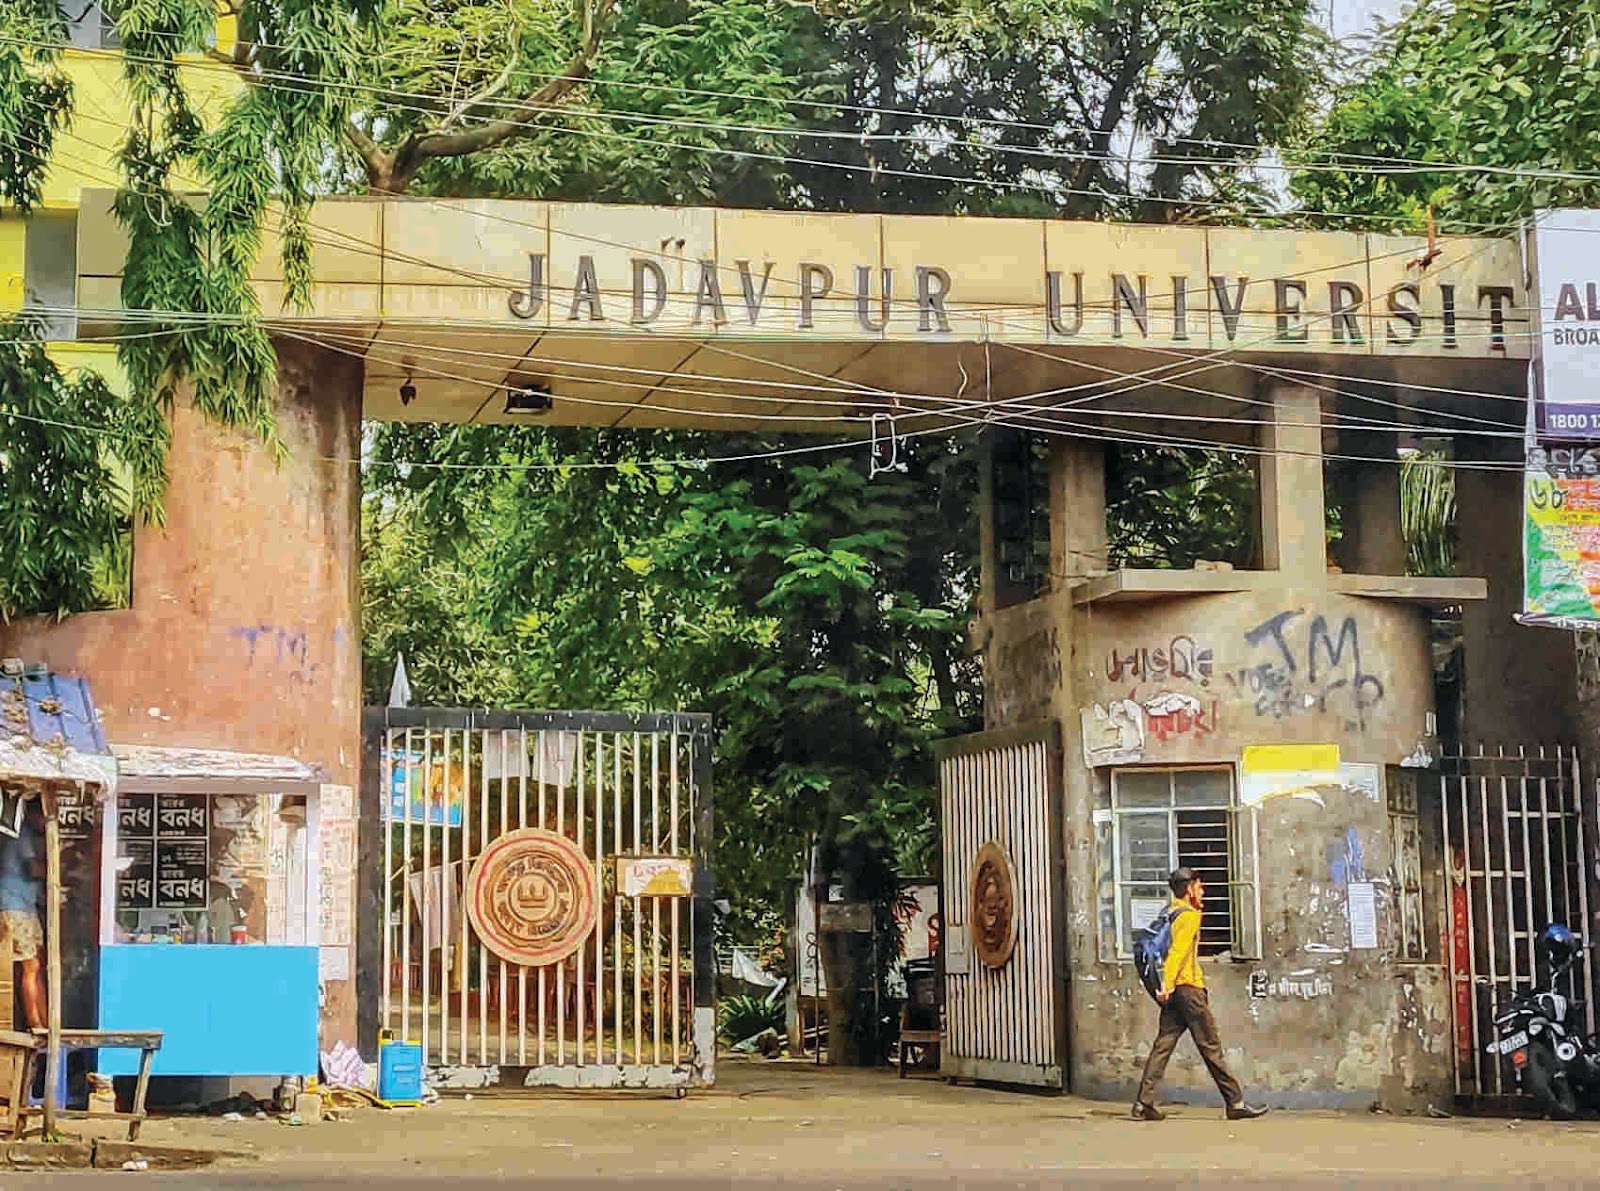 Jadavpur University 